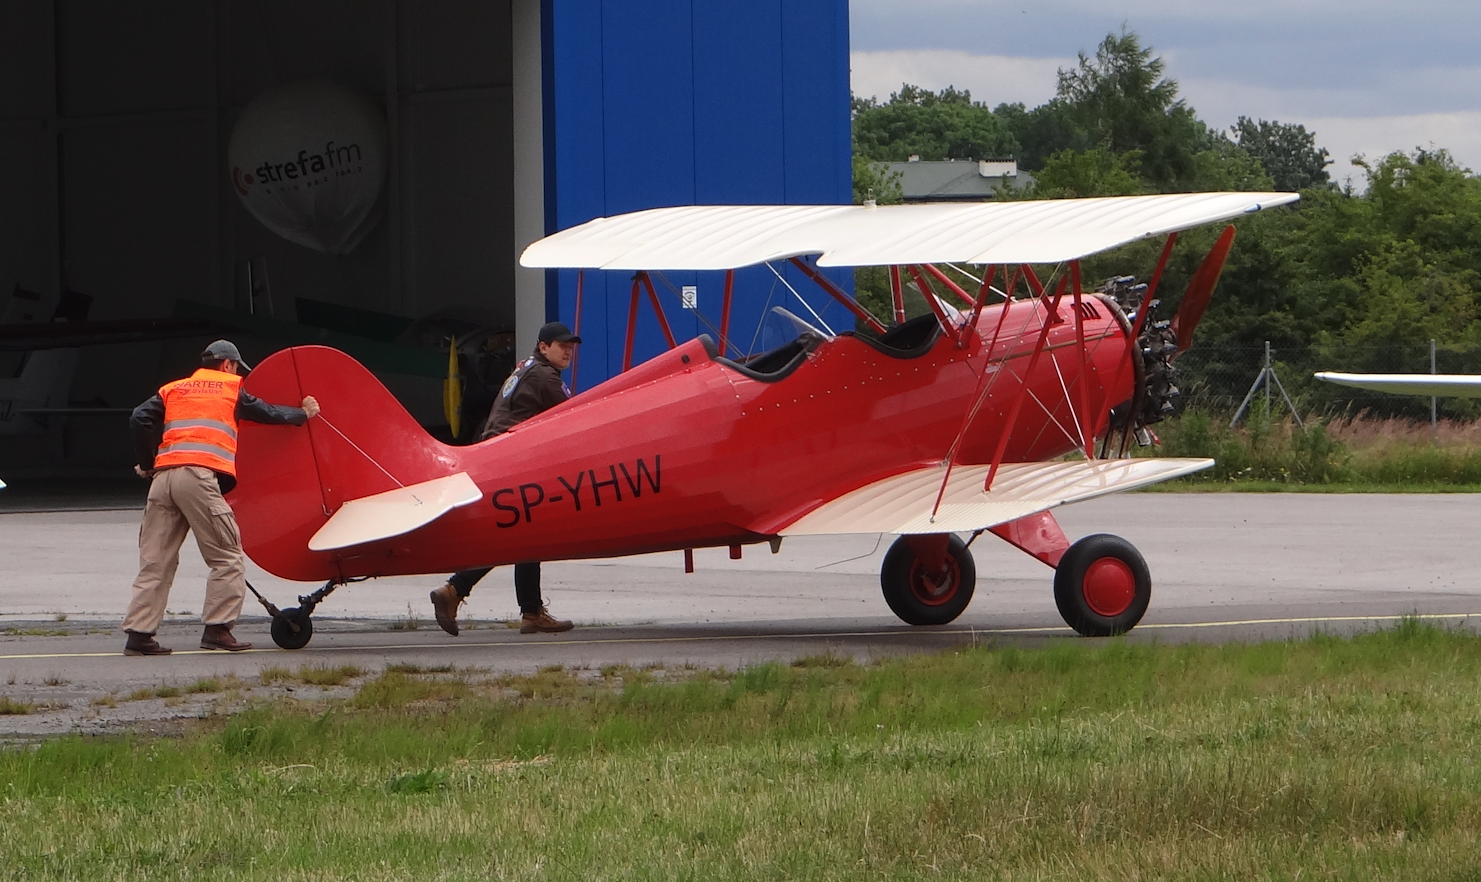 Samolot amatorski Hatz CB-1 SP-YHW z 60-lat do własnego montażu. 2018 rok. Zdjęcie Karol Placha Hetman